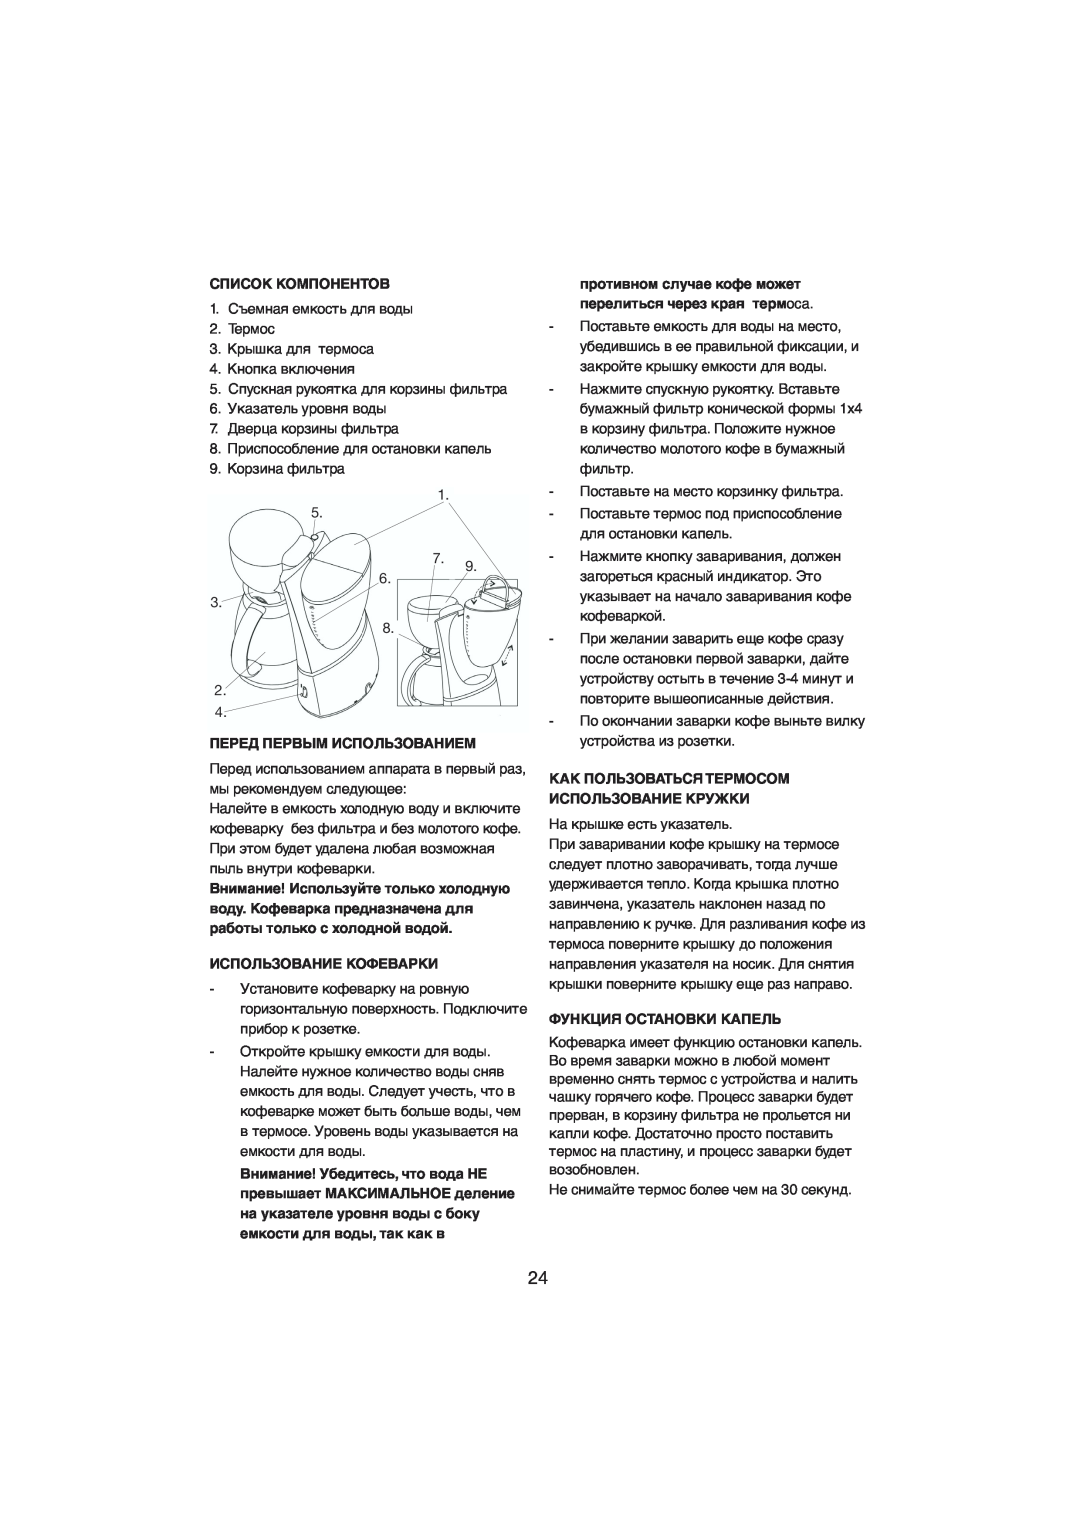 Melissa 245-022 manual Список Компонентов, Перед Первым Использованием, Использование Кофеварки, Функция Остановки Капель 